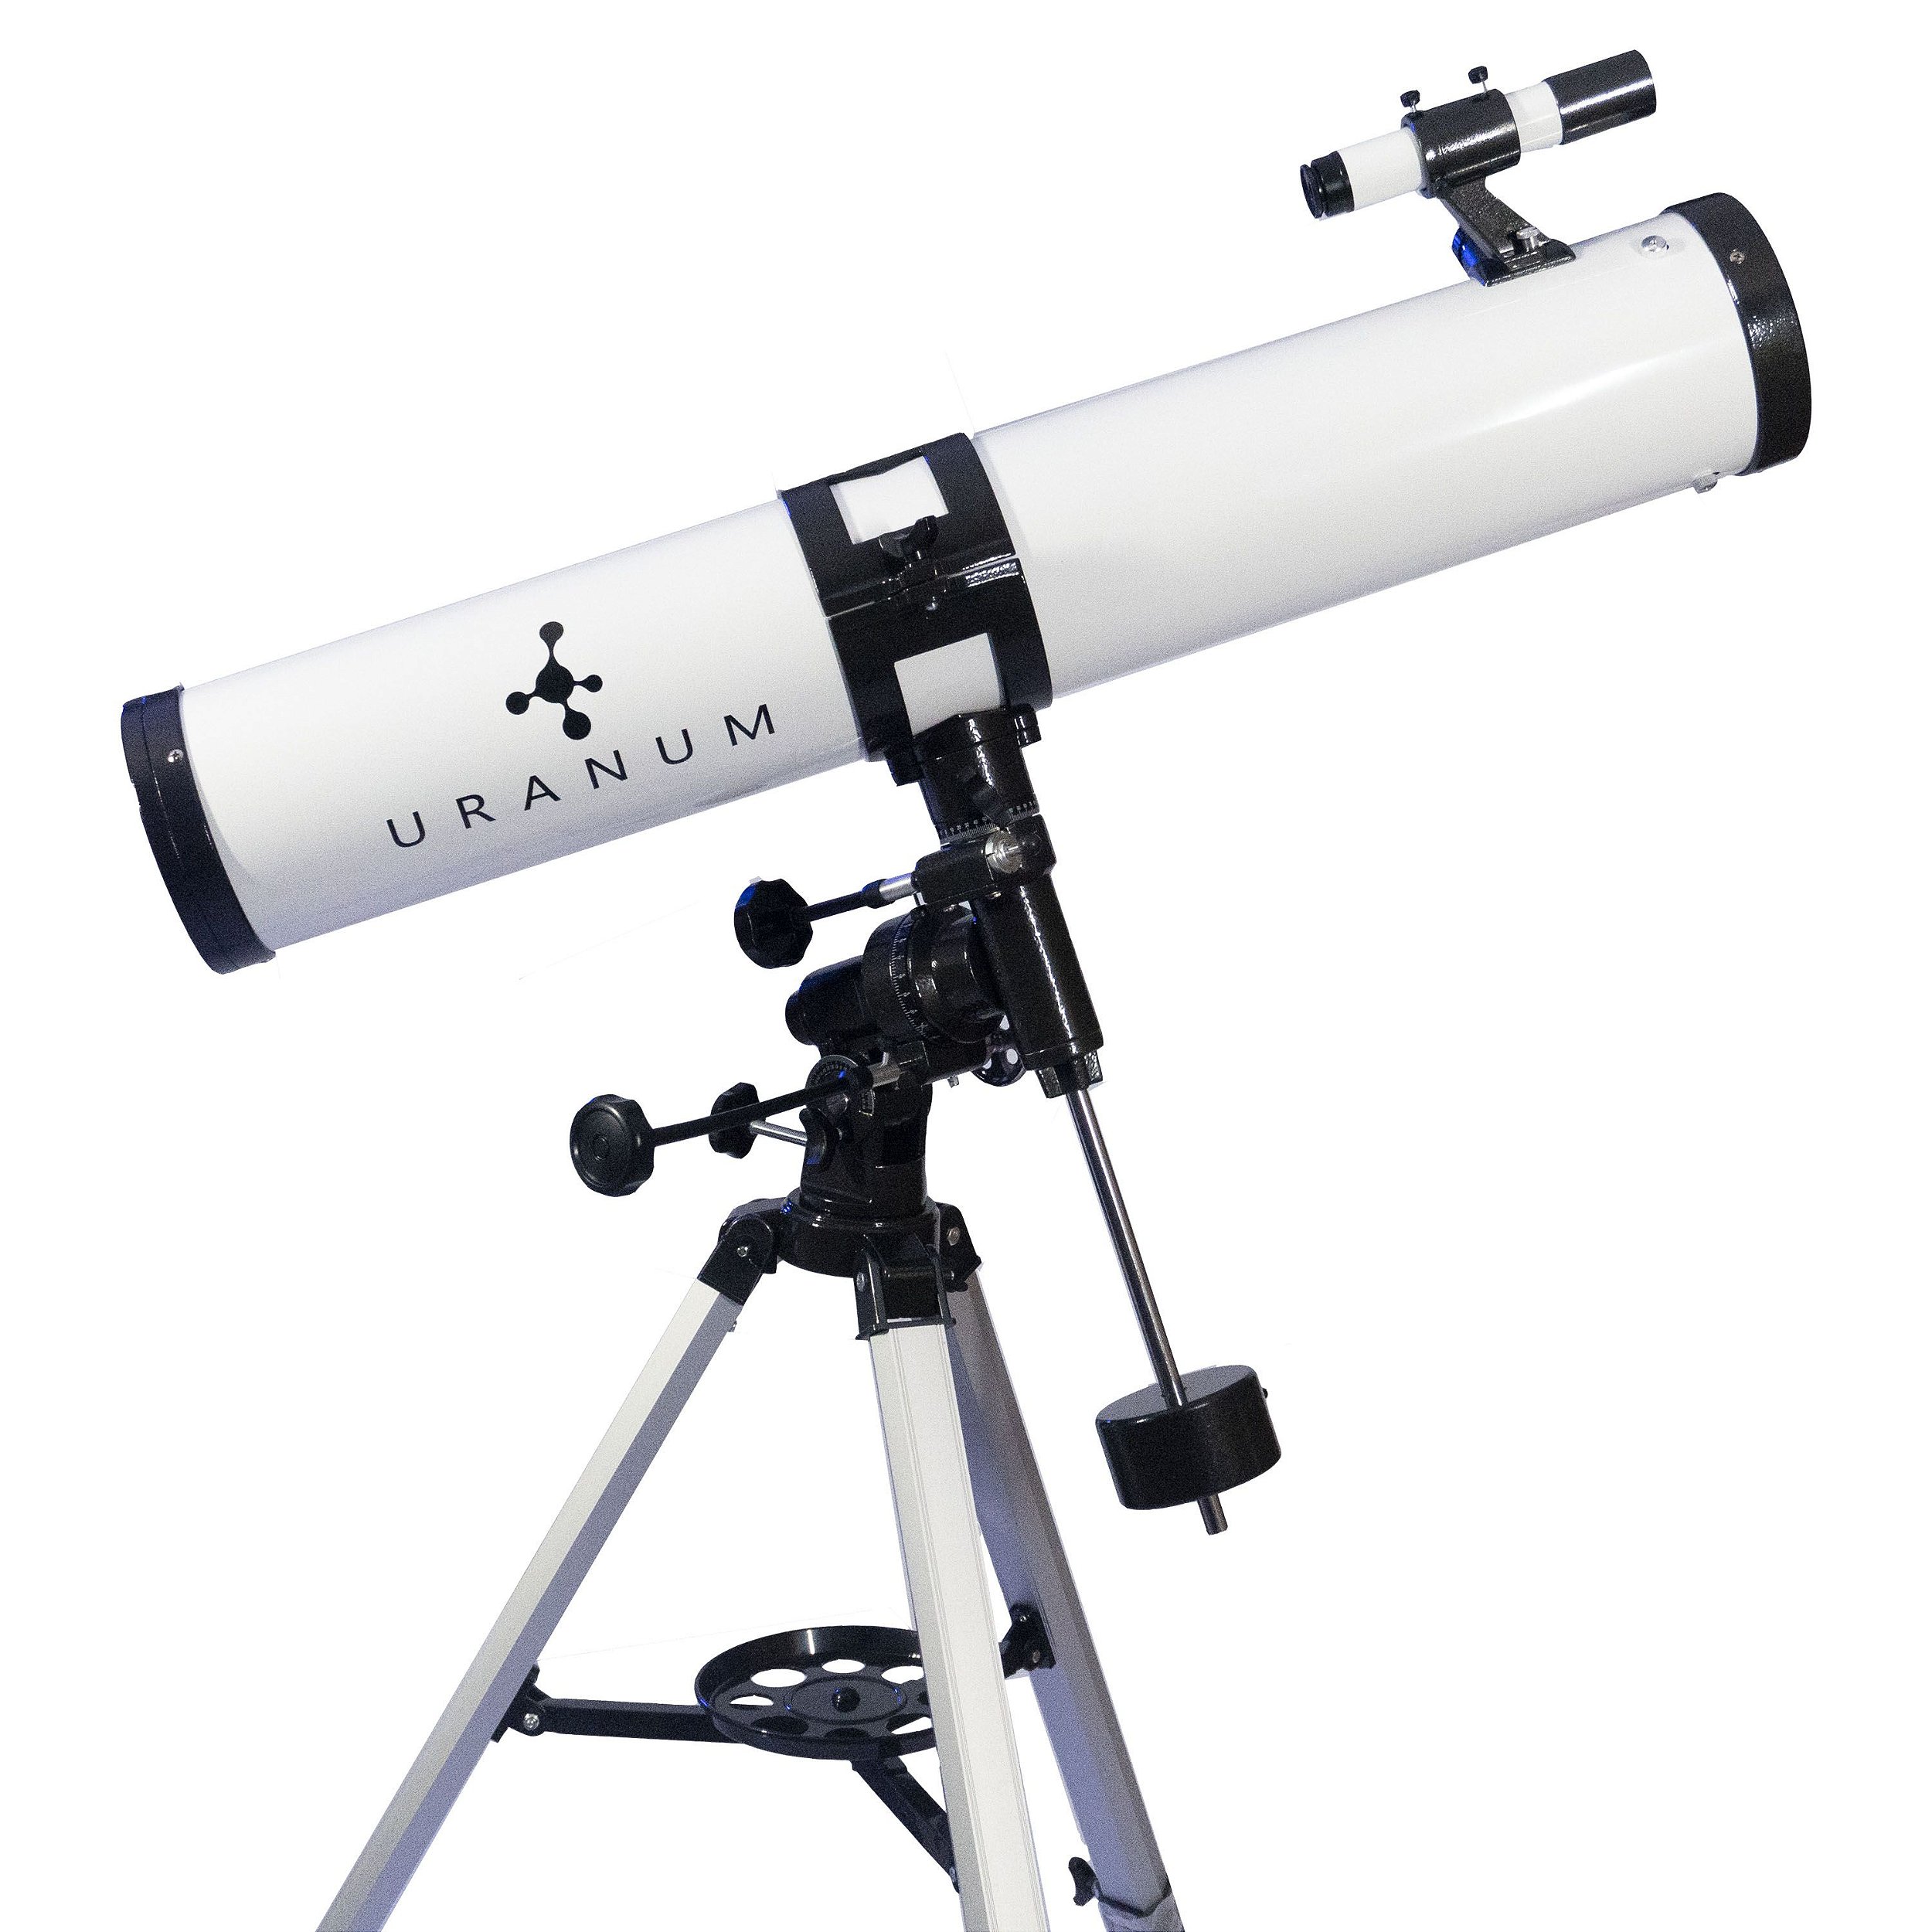 Desvende o Universo com o Telescópio Refrator 114mm Atena Uranum - Uranum